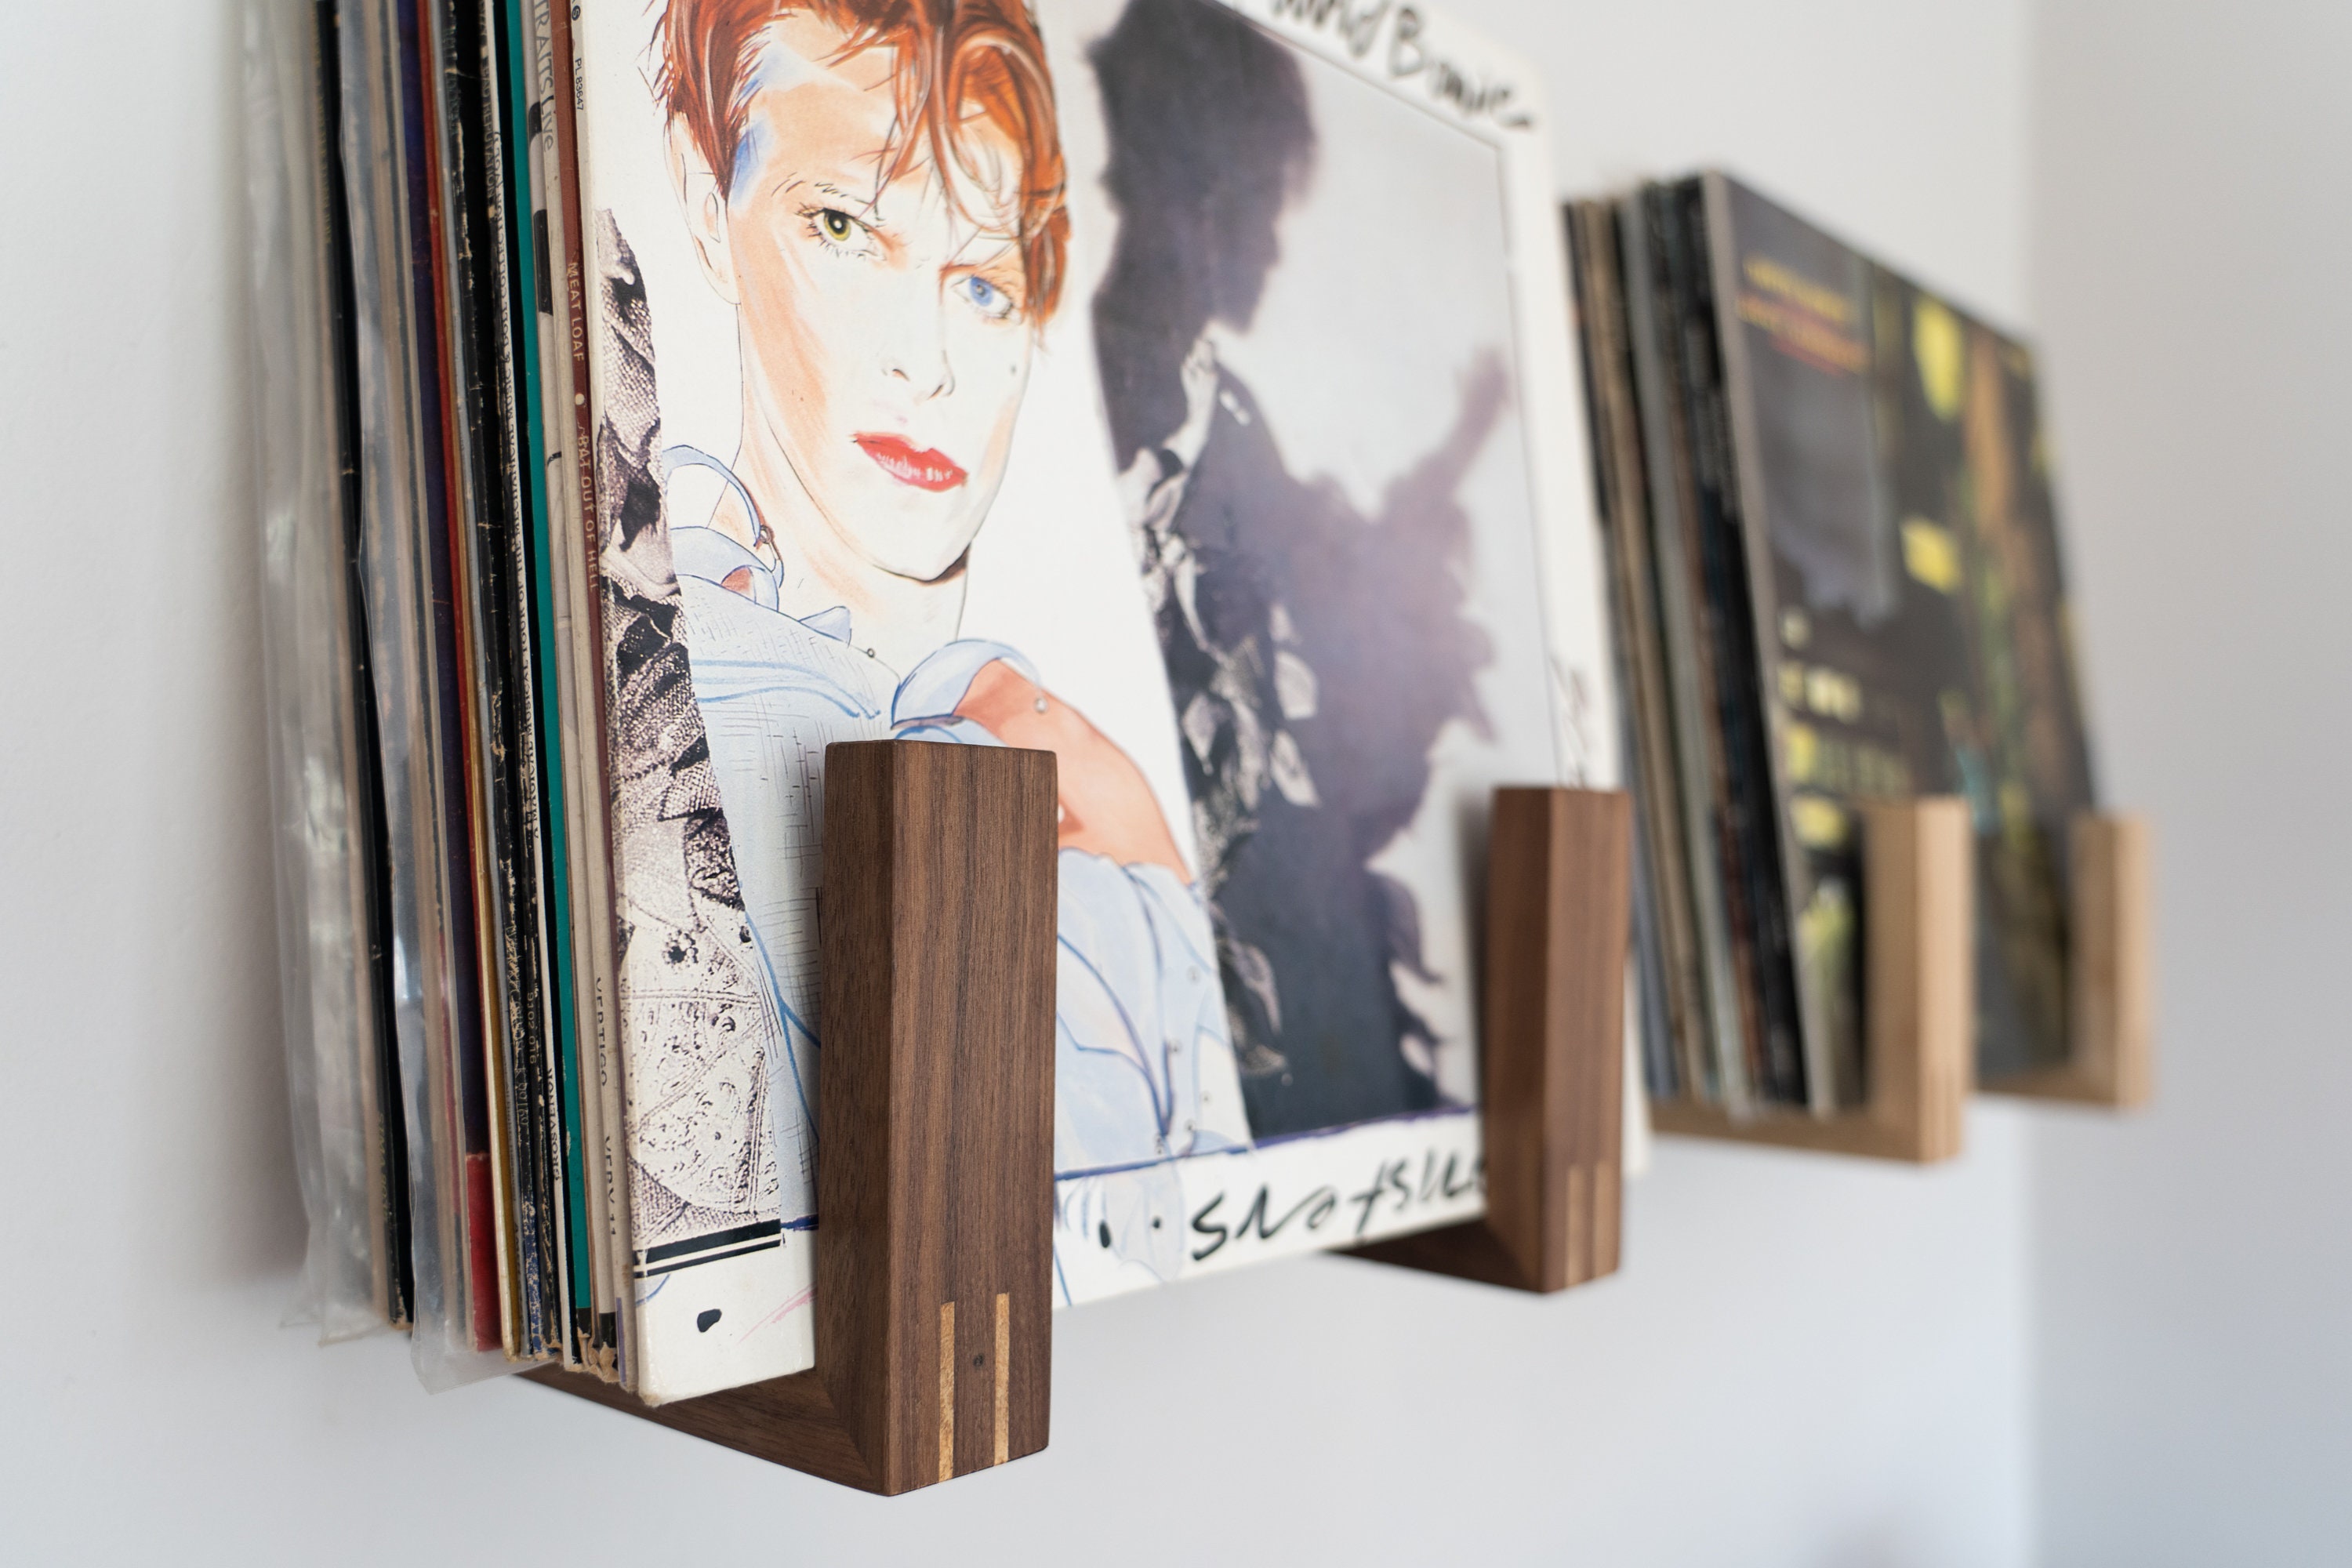 Wooden Vinyl Record Flip Rack LP Vinyl Record Holder Made From